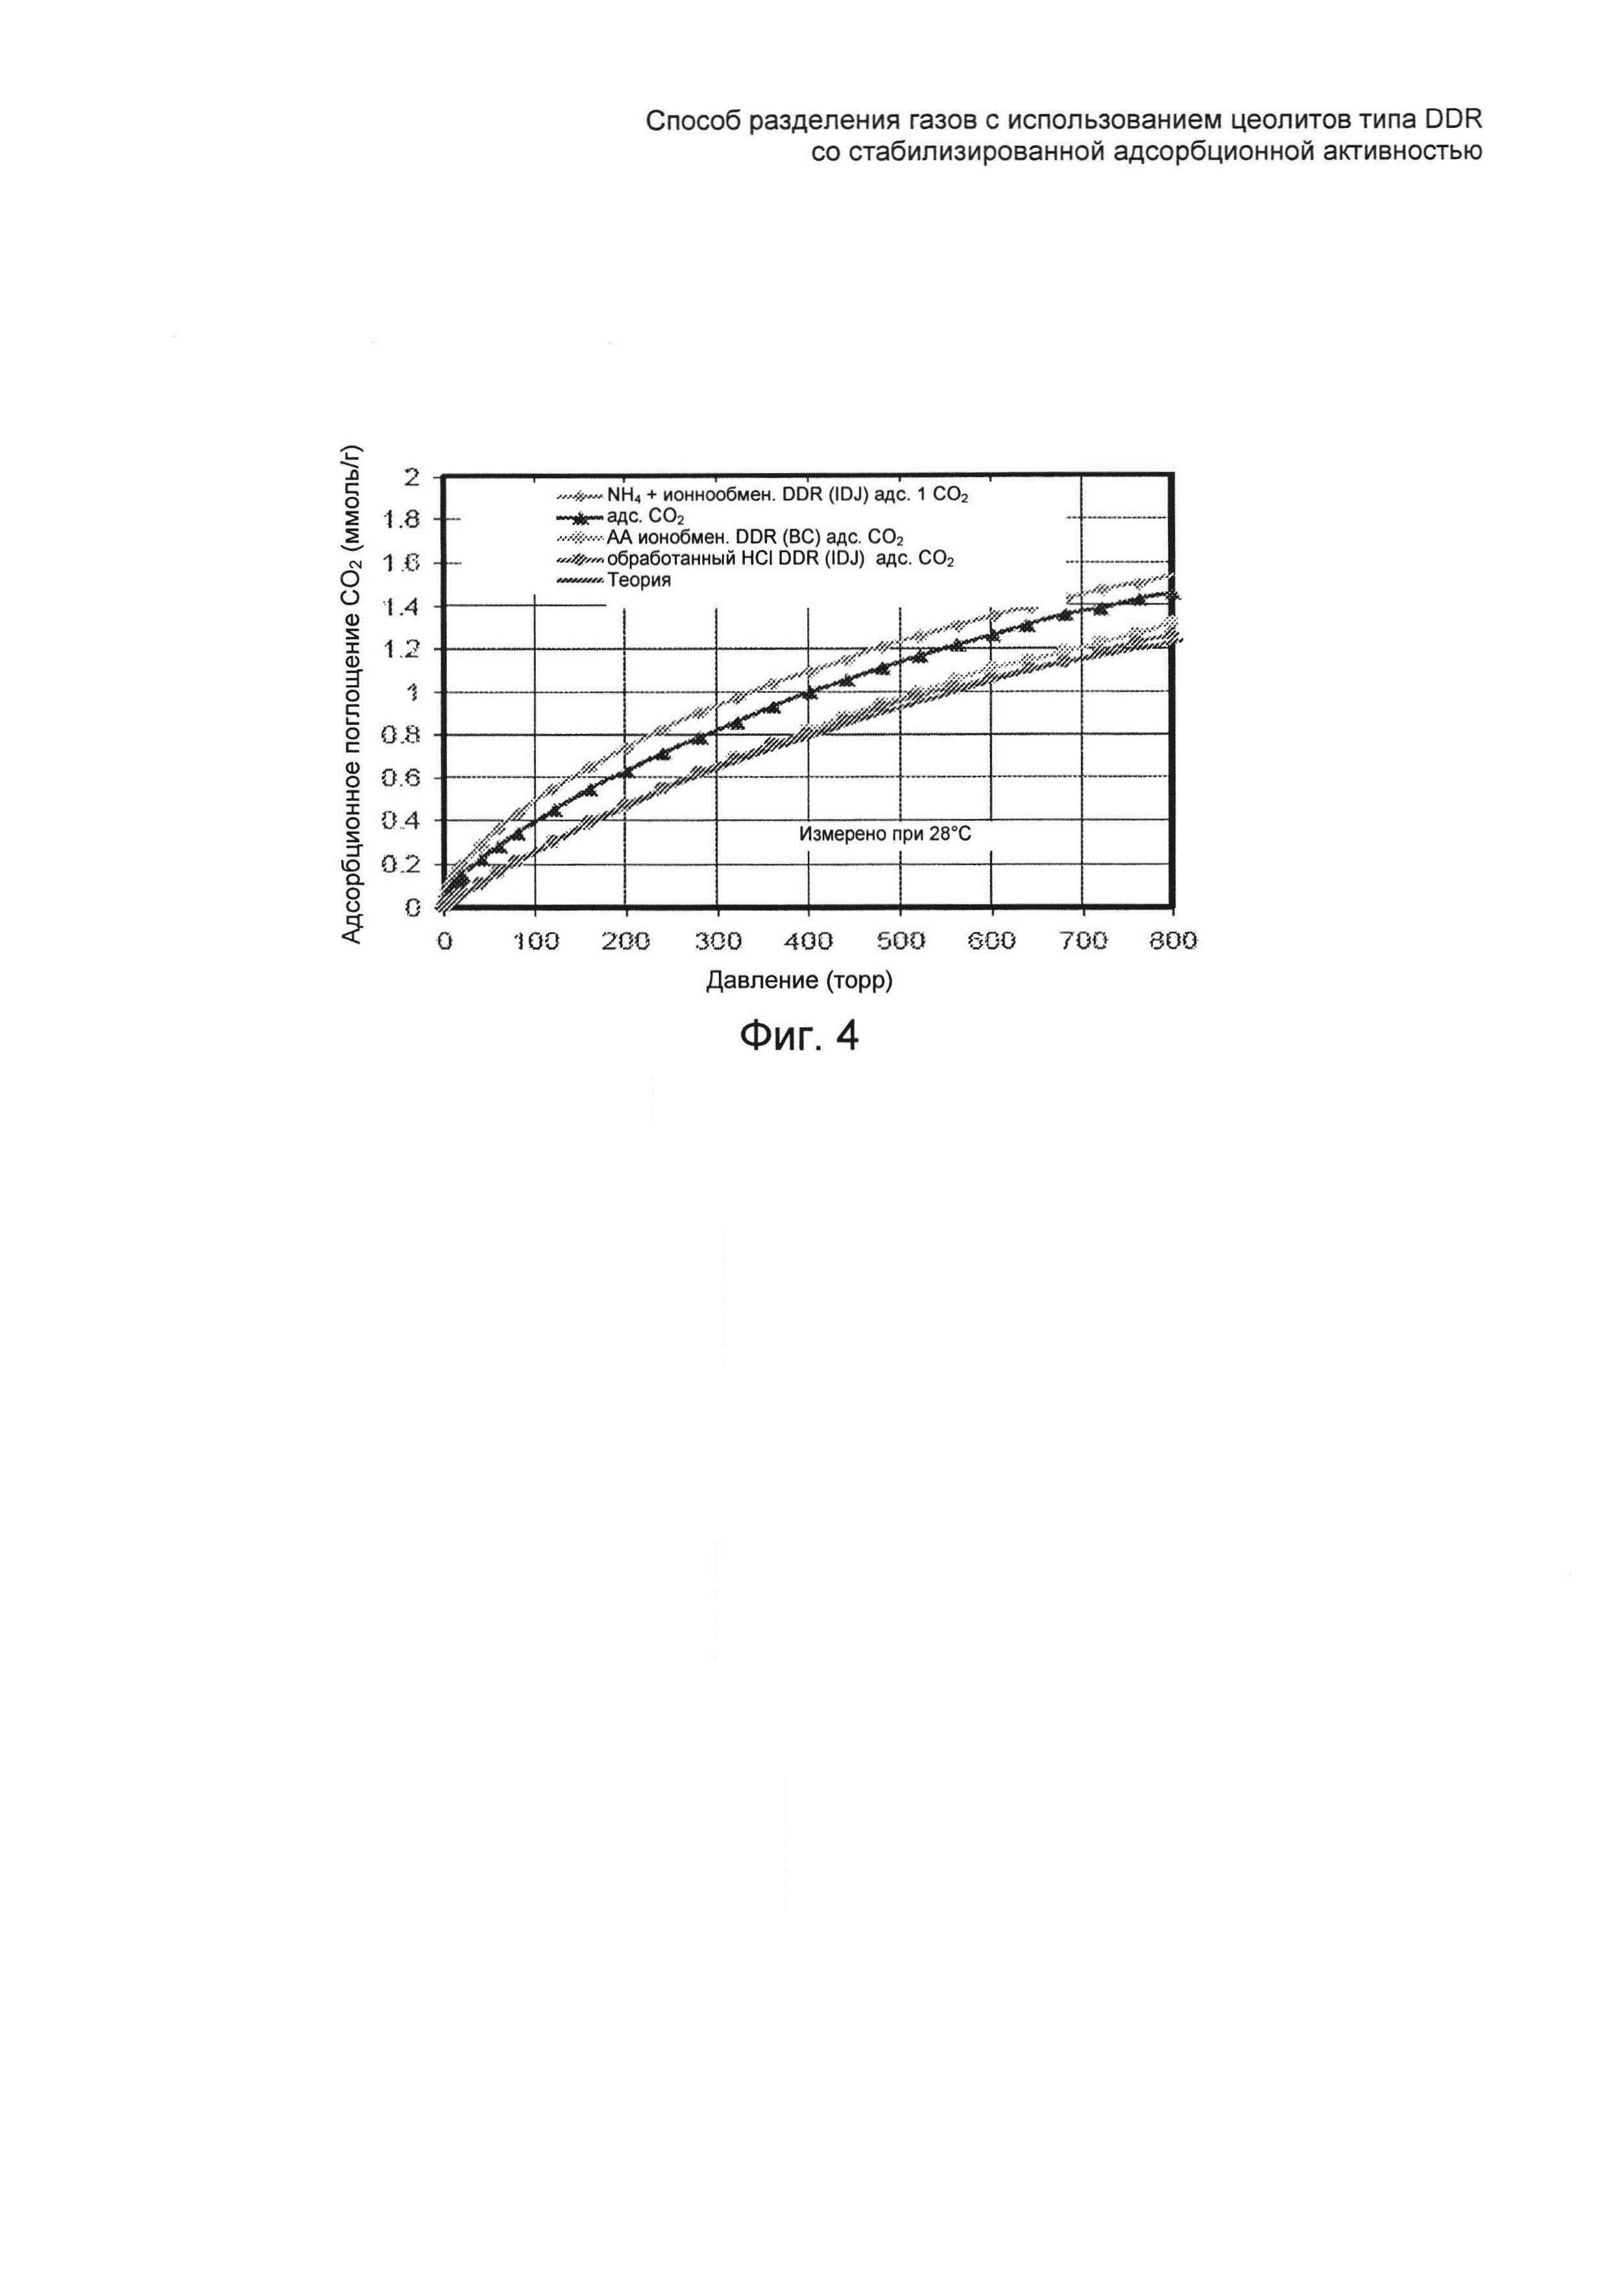 Способ разделения газов с использованием цеолитов типа DDR со стабилизированной адсорбционной активностью